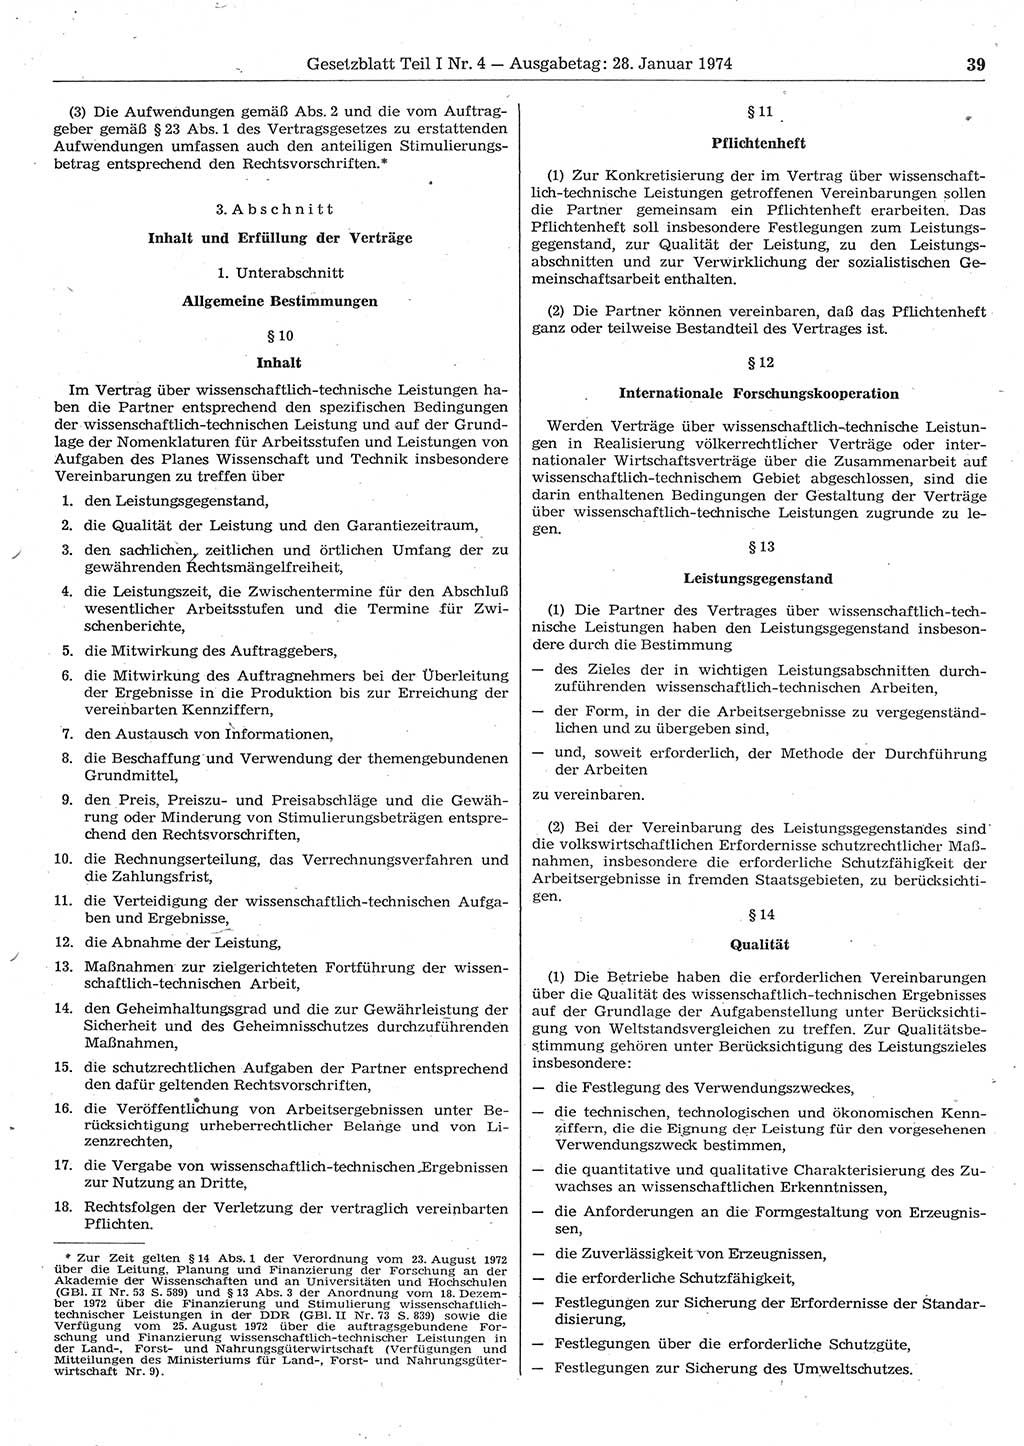 Gesetzblatt (GBl.) der Deutschen Demokratischen Republik (DDR) Teil Ⅰ 1974, Seite 39 (GBl. DDR Ⅰ 1974, S. 39)